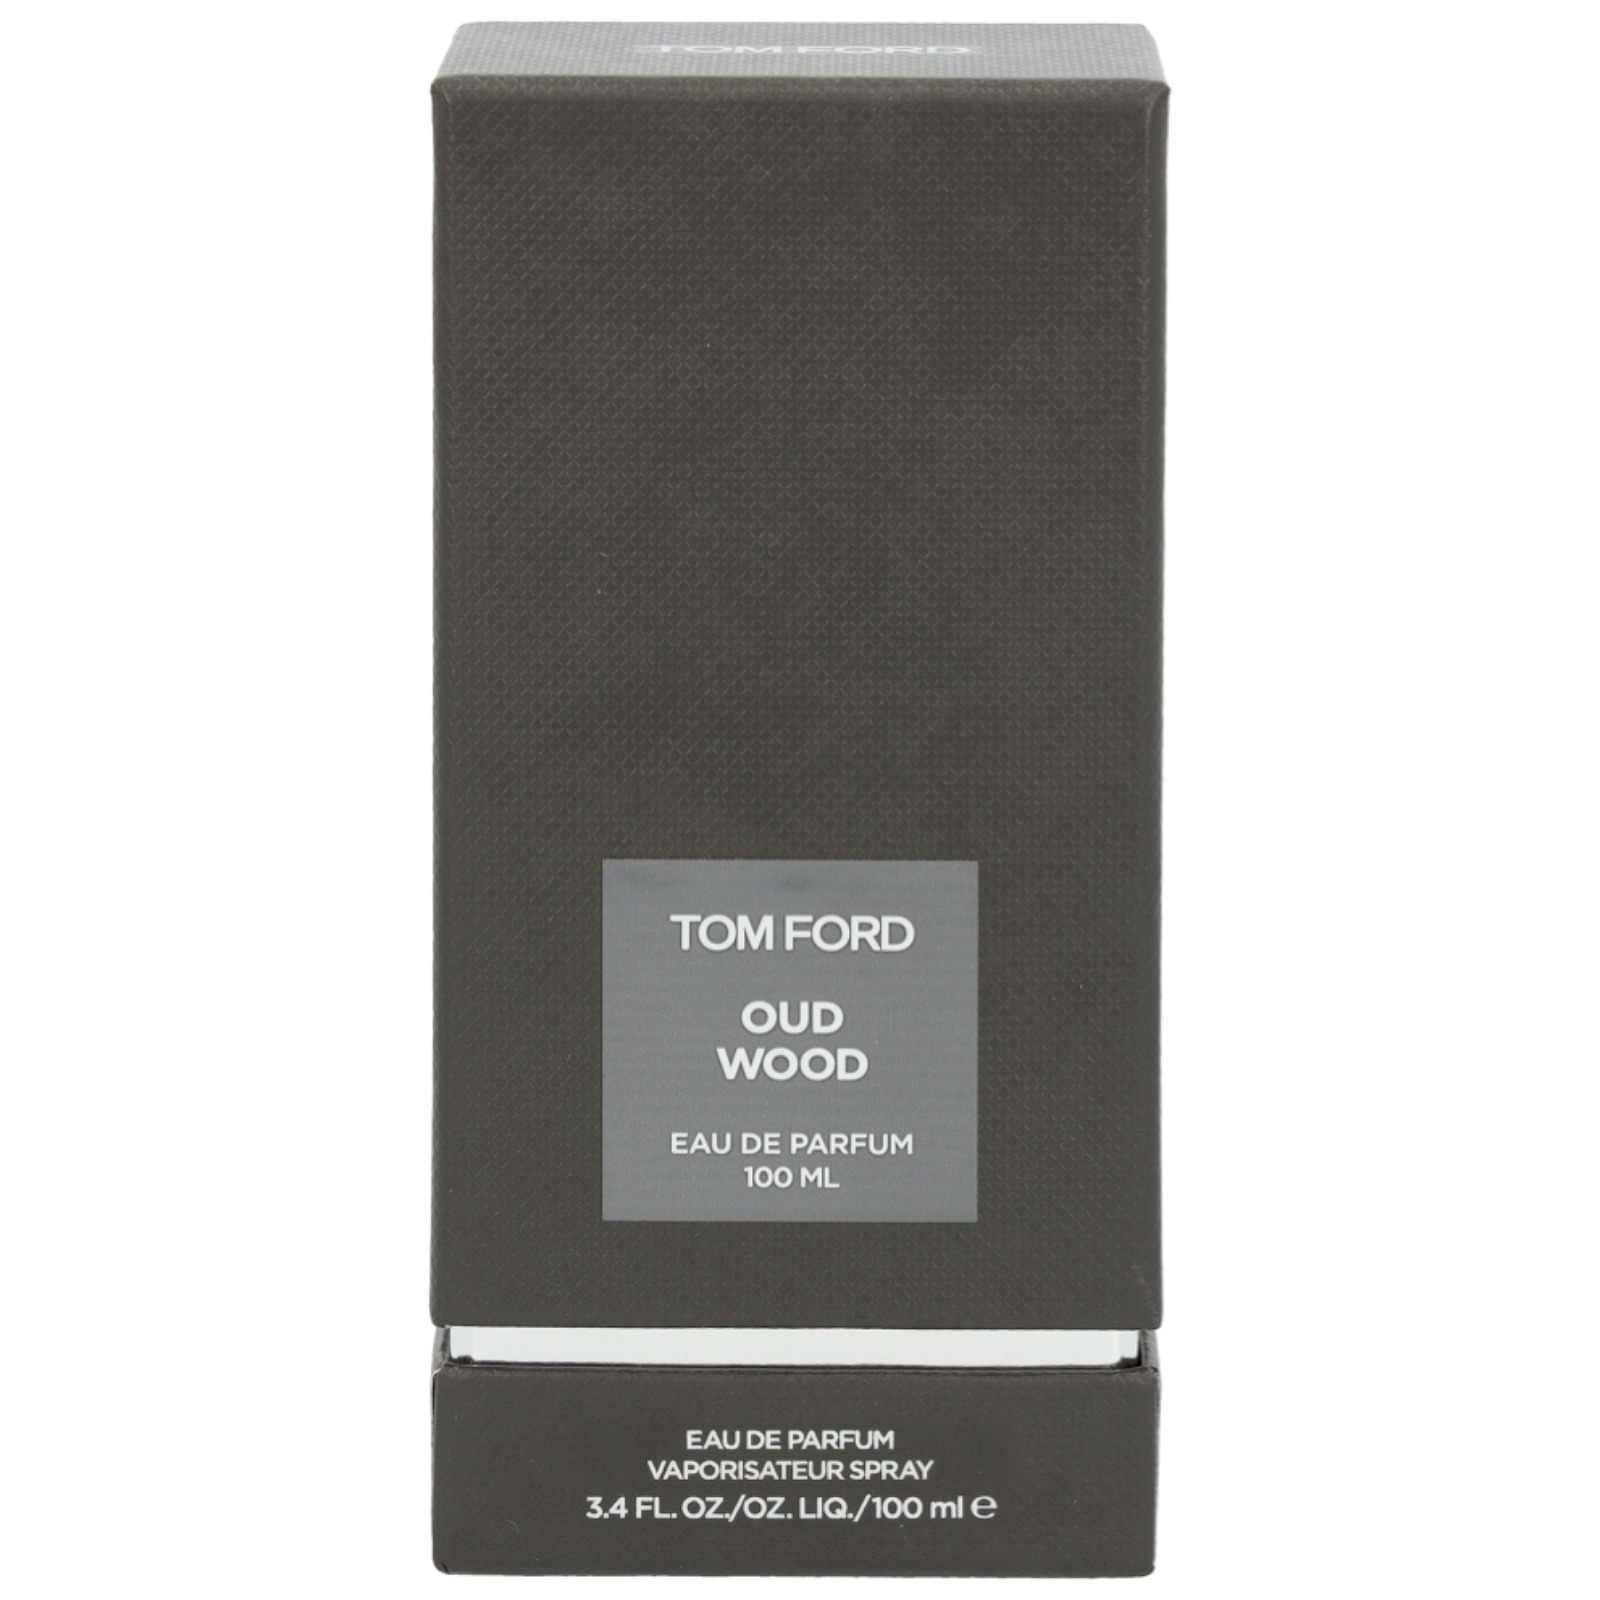 OUD WOOD Perfume Cologne For Men Eau de Parfume  3.4oz/100ML New With Box